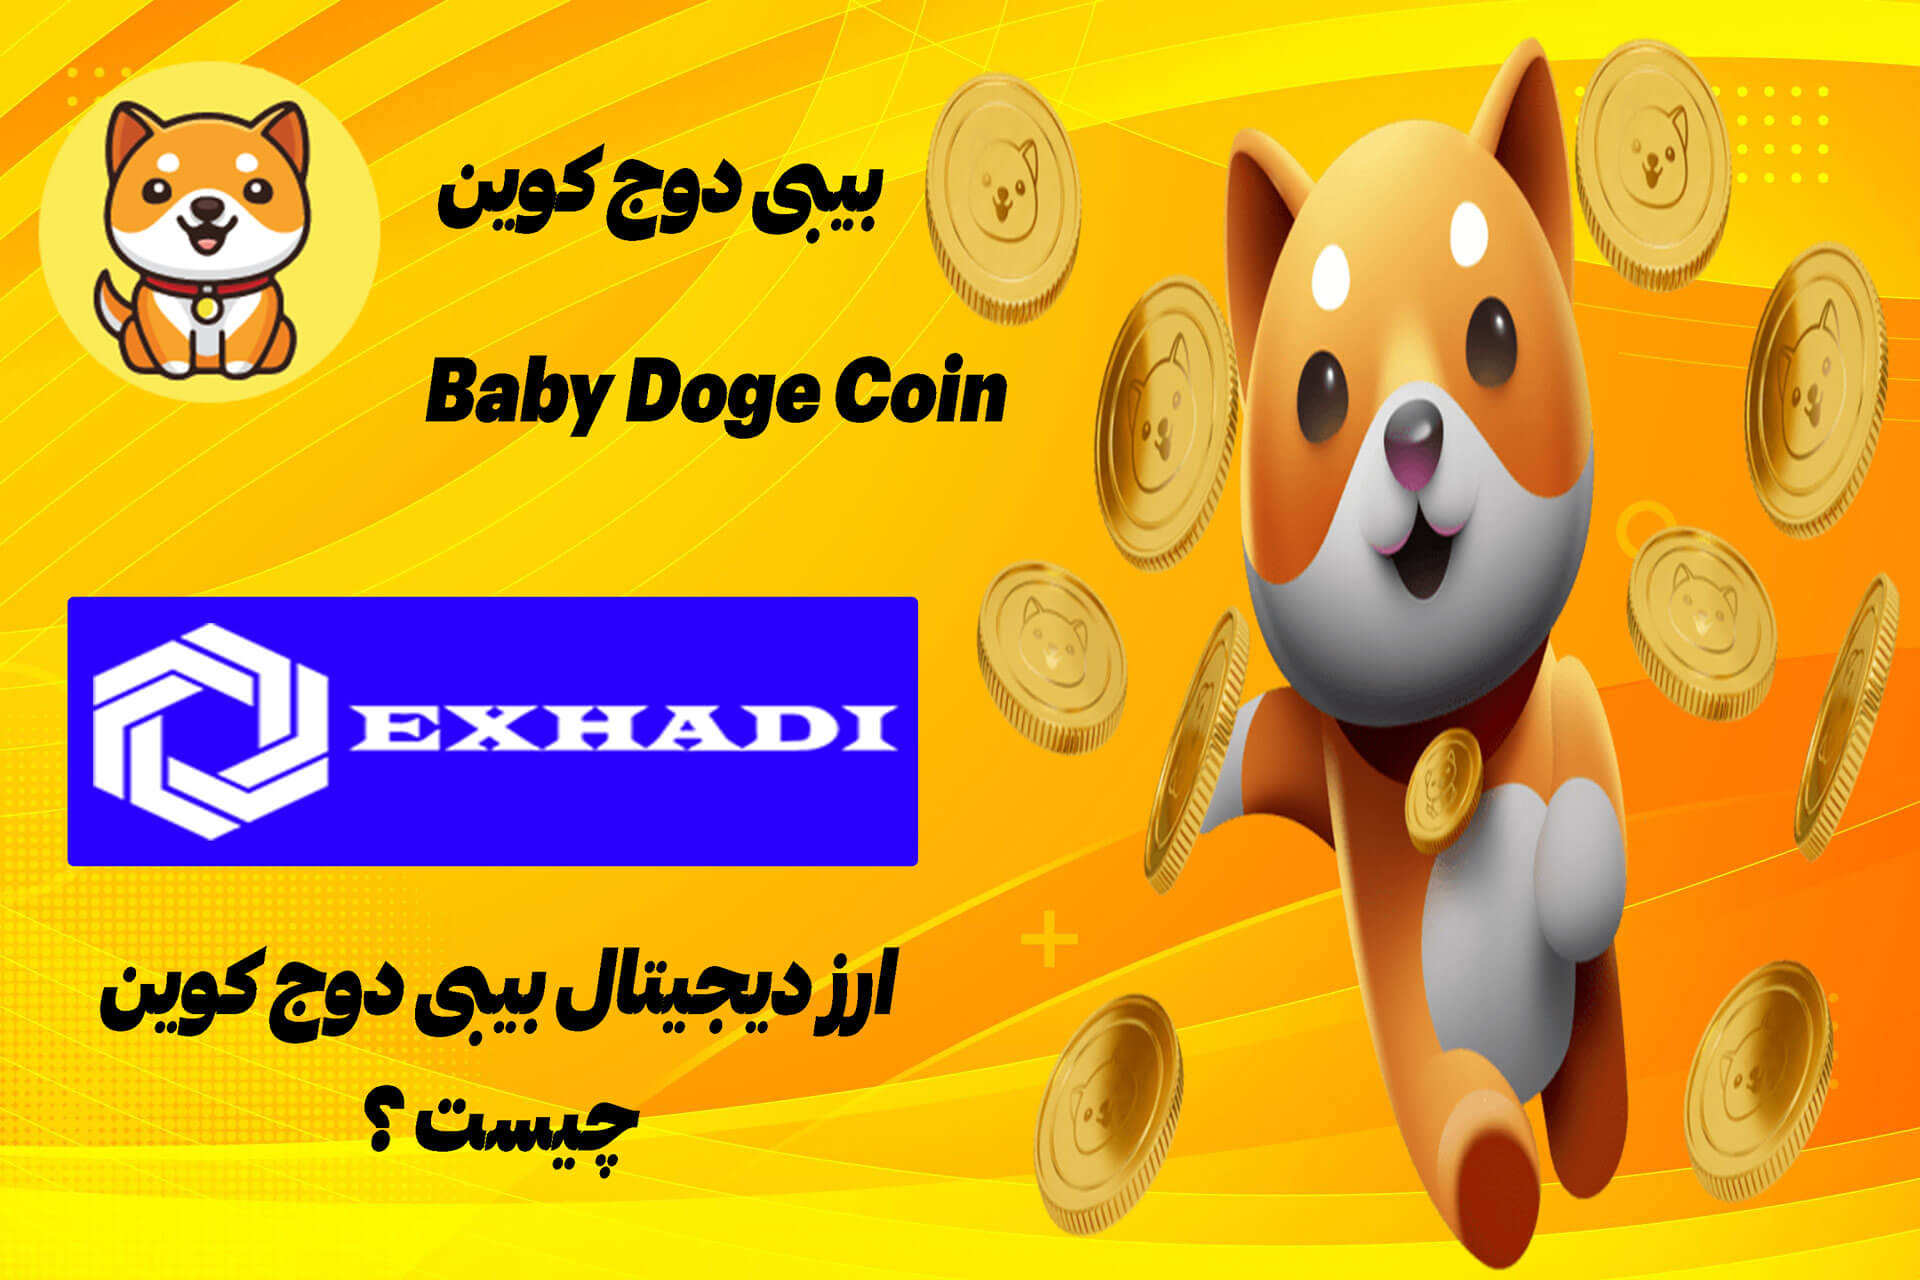 بیبی دوج کوین Baby Doge coin چیست ؟ | خرید بیبی دوج کوین | فروش بیبی دوج کوین | خرید و فروش بیبی دوج کوین | بیبی دوج کوین | خرید و فروش BabyDoge | تبدیل BabyDoge | ترید BabyDoge